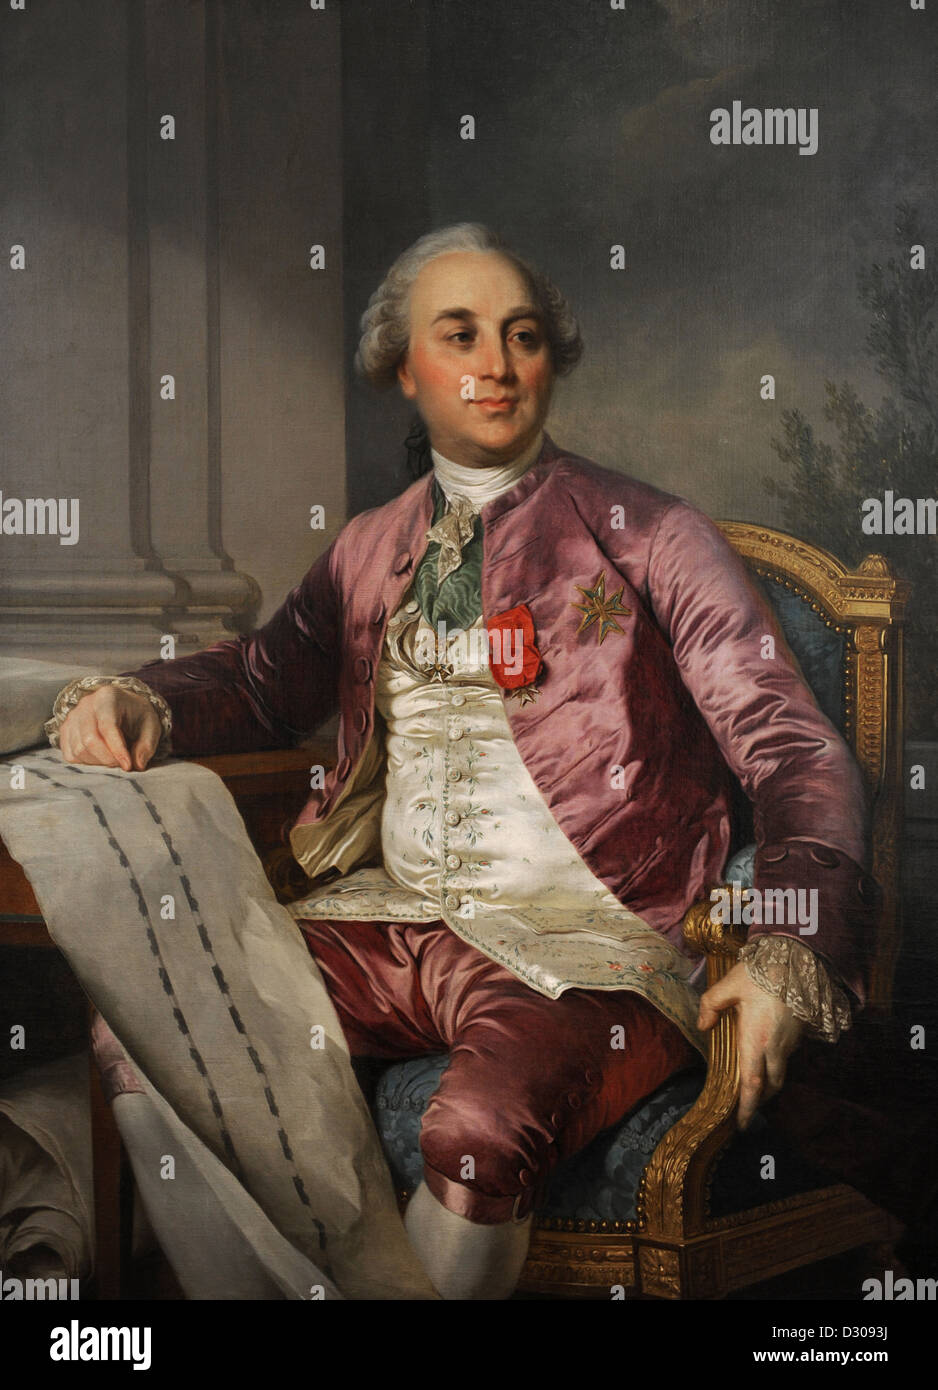 Charles-Claude Flahaut de la Billarderie, comte d'Angiviller (1730-1809). Portrait by Joseph-Siffred Duplessis (1725-1802). Stock Photo